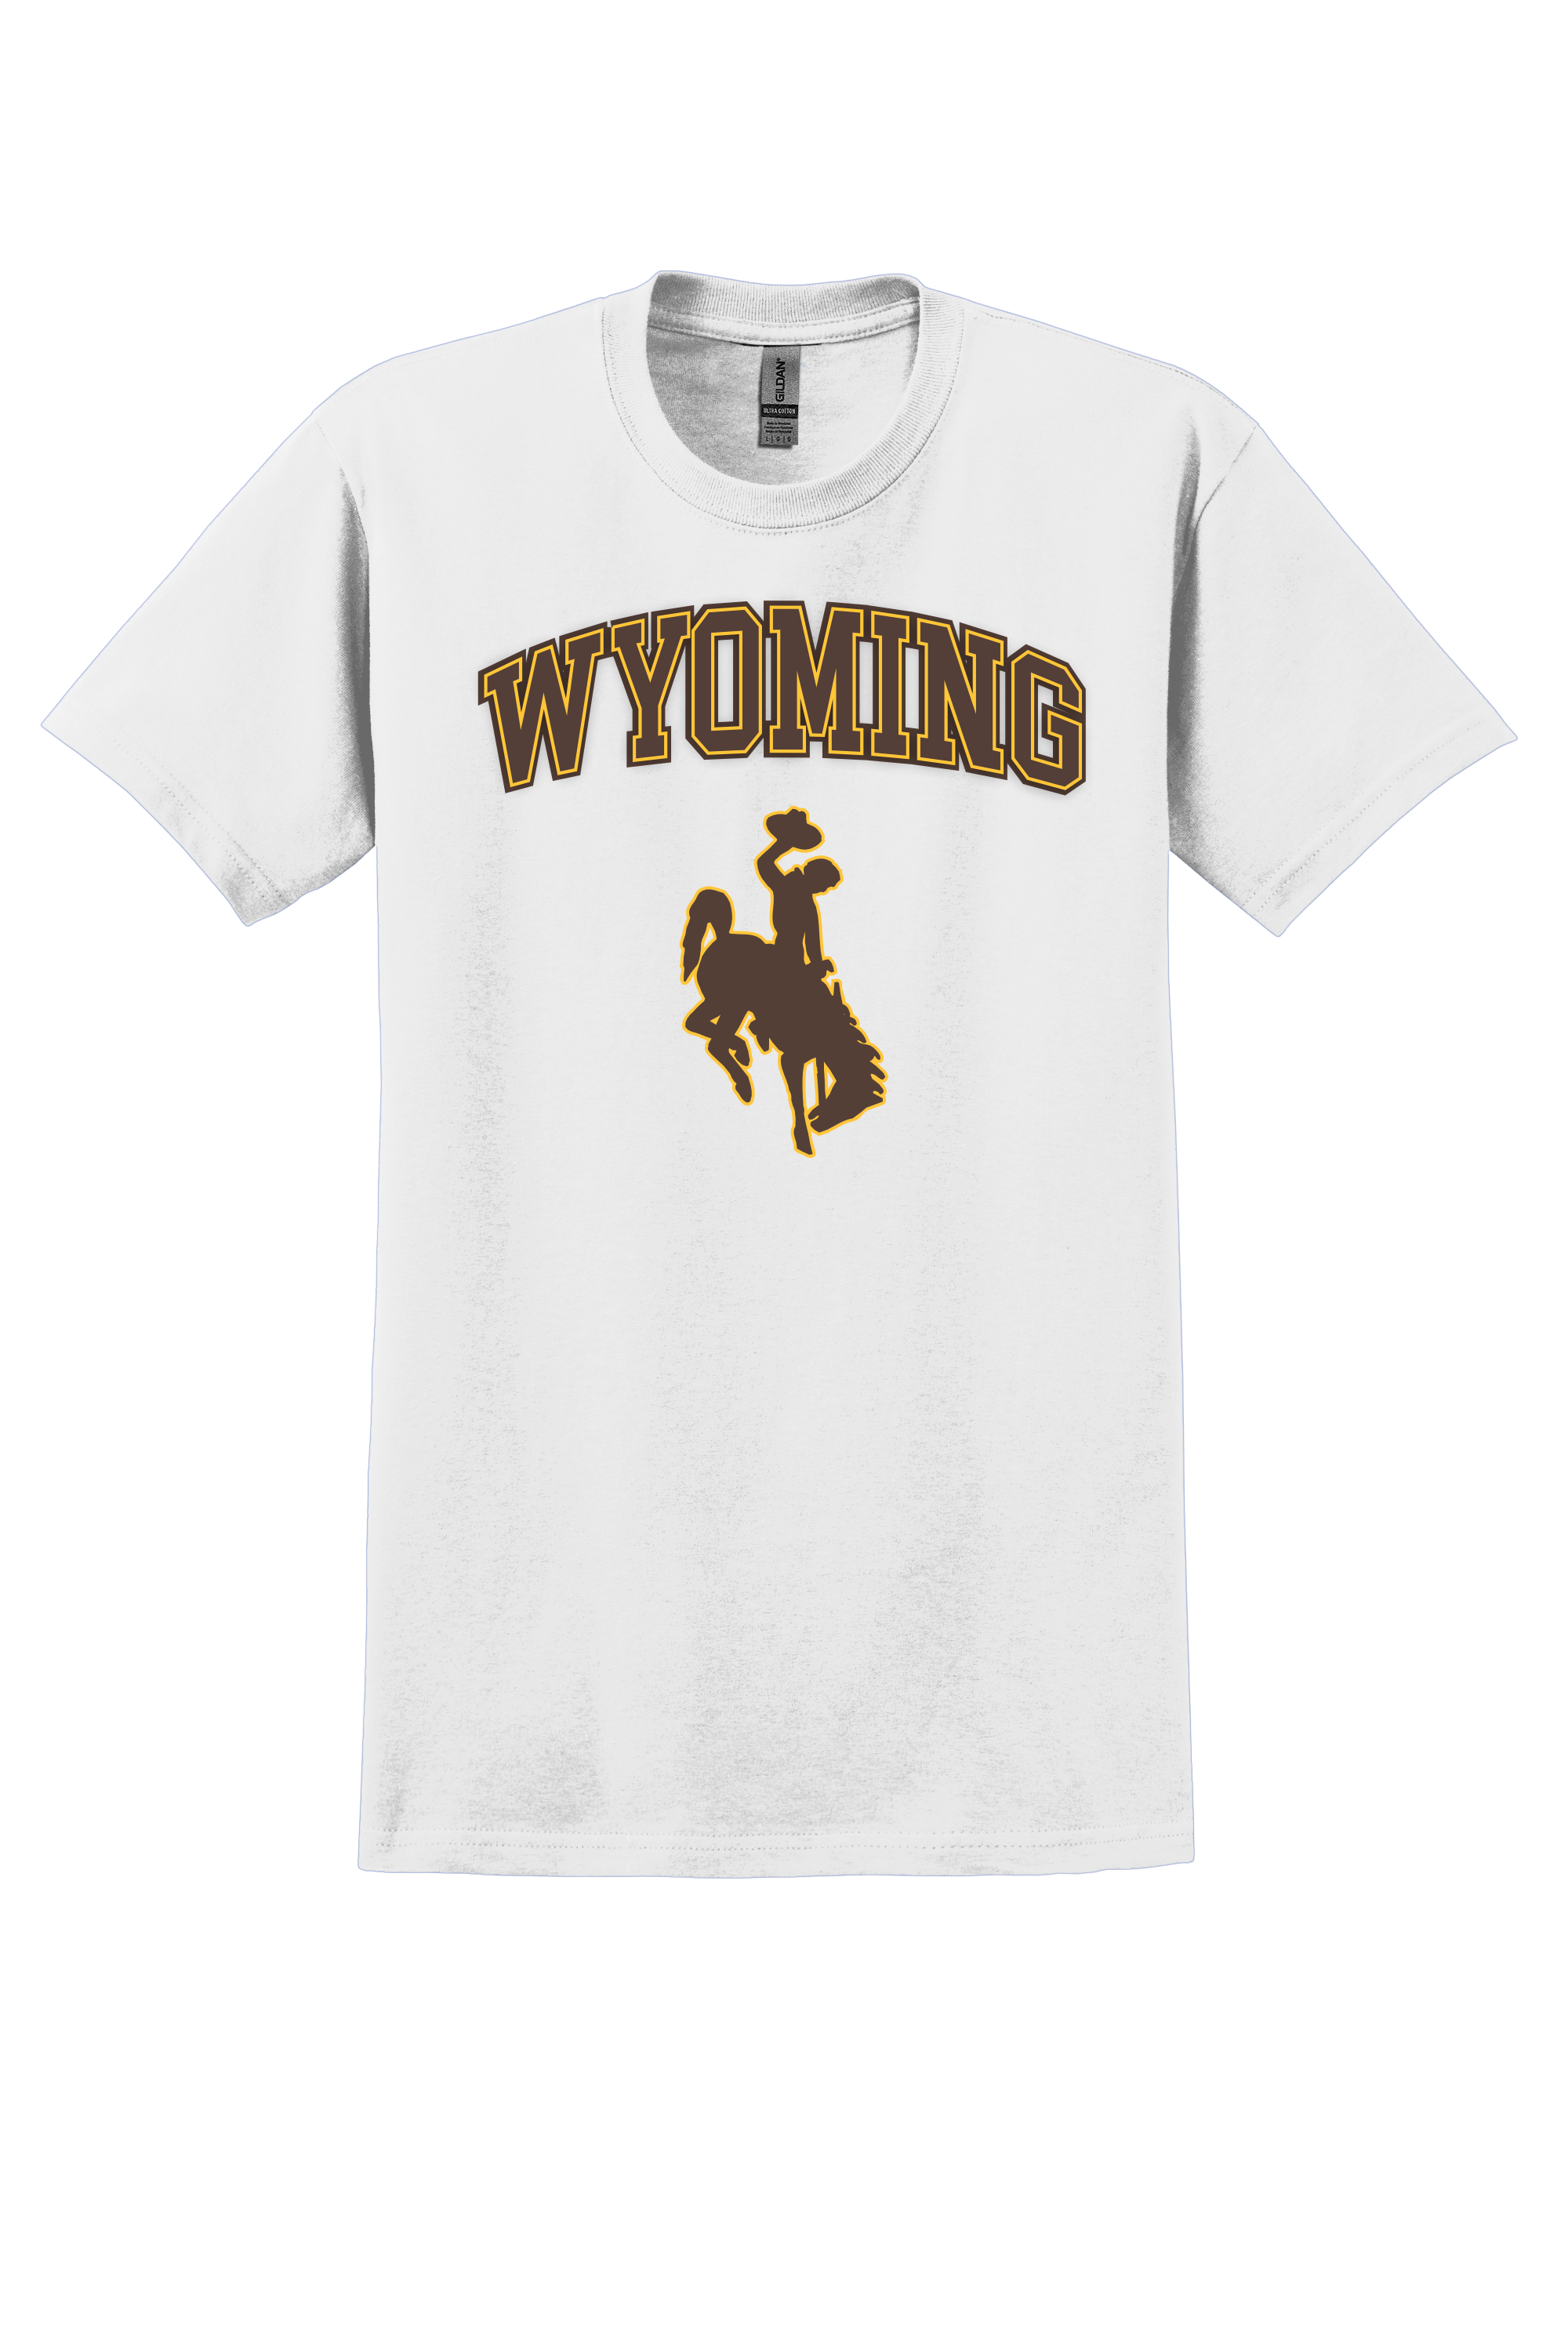  University of Wyoming T-shirt- White